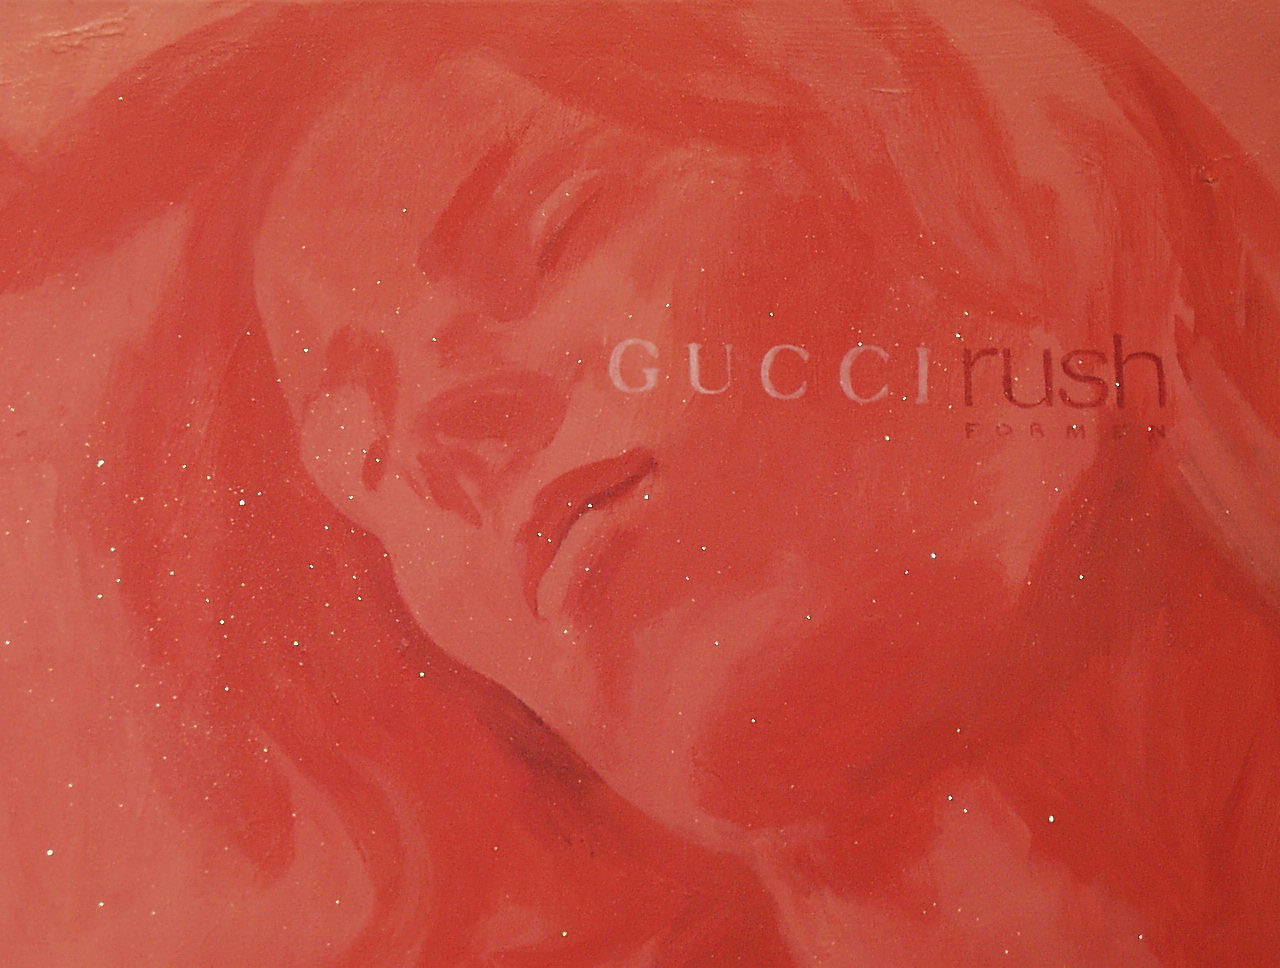 Agnieszka Brzeżańska - Gucci-Rush (Oil on Canvas | Wymiary: 106 x 76 cm | Cena: 13000 PLN)